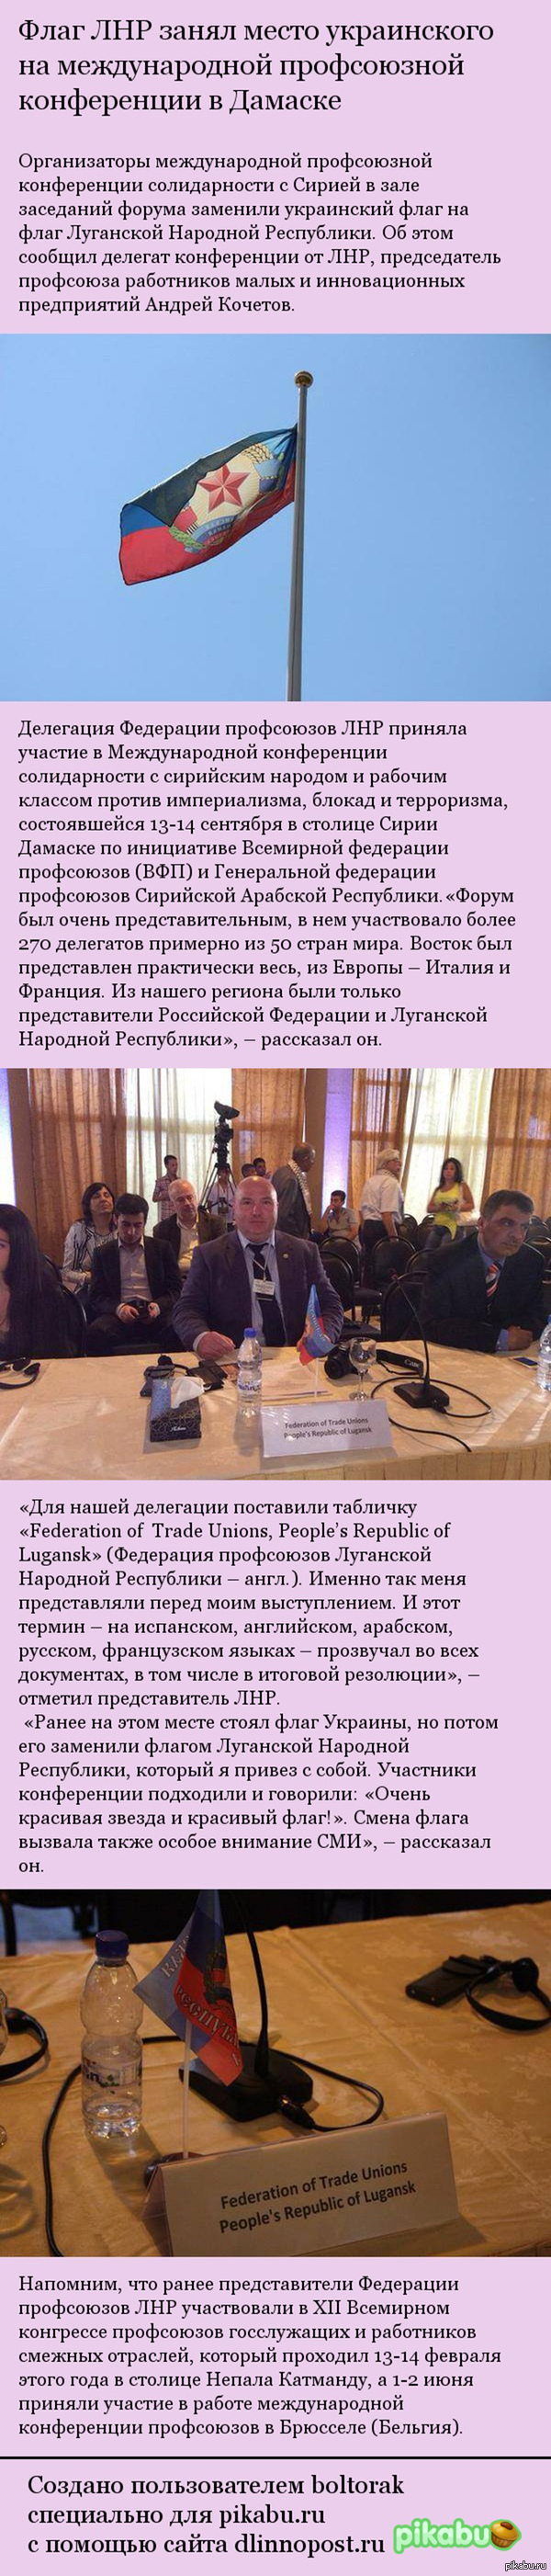     ,        ,   ! http://www.politnavigator.net/flag-lnr-zanyal-mesto-ukrainskogo-na-mezhdunarodnojj-profsoyuznojj-konferencii-v-damaske.html